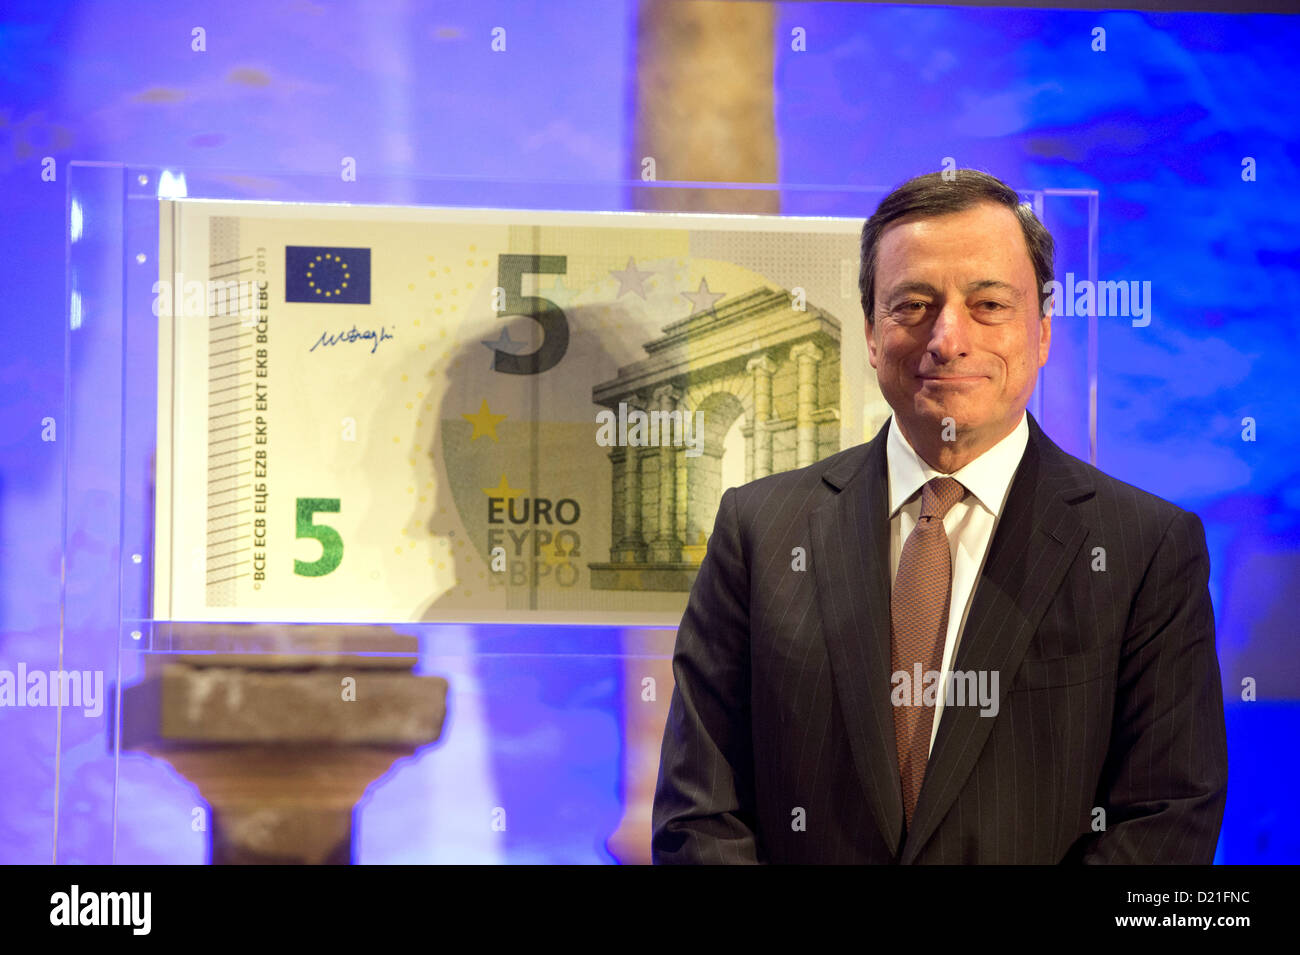 Le Président de la BCE Mario Draghi dévoile le nouveau billet de 5 euros au Musée Archéologique de Francfort-sur-Main, Allemagne, 10 janvier 2013. L'exposition 'Le nouveau visage de l'Euro" est également exposée dans le musée en même temps. Photo : BORIS ROESSLER Banque D'Images